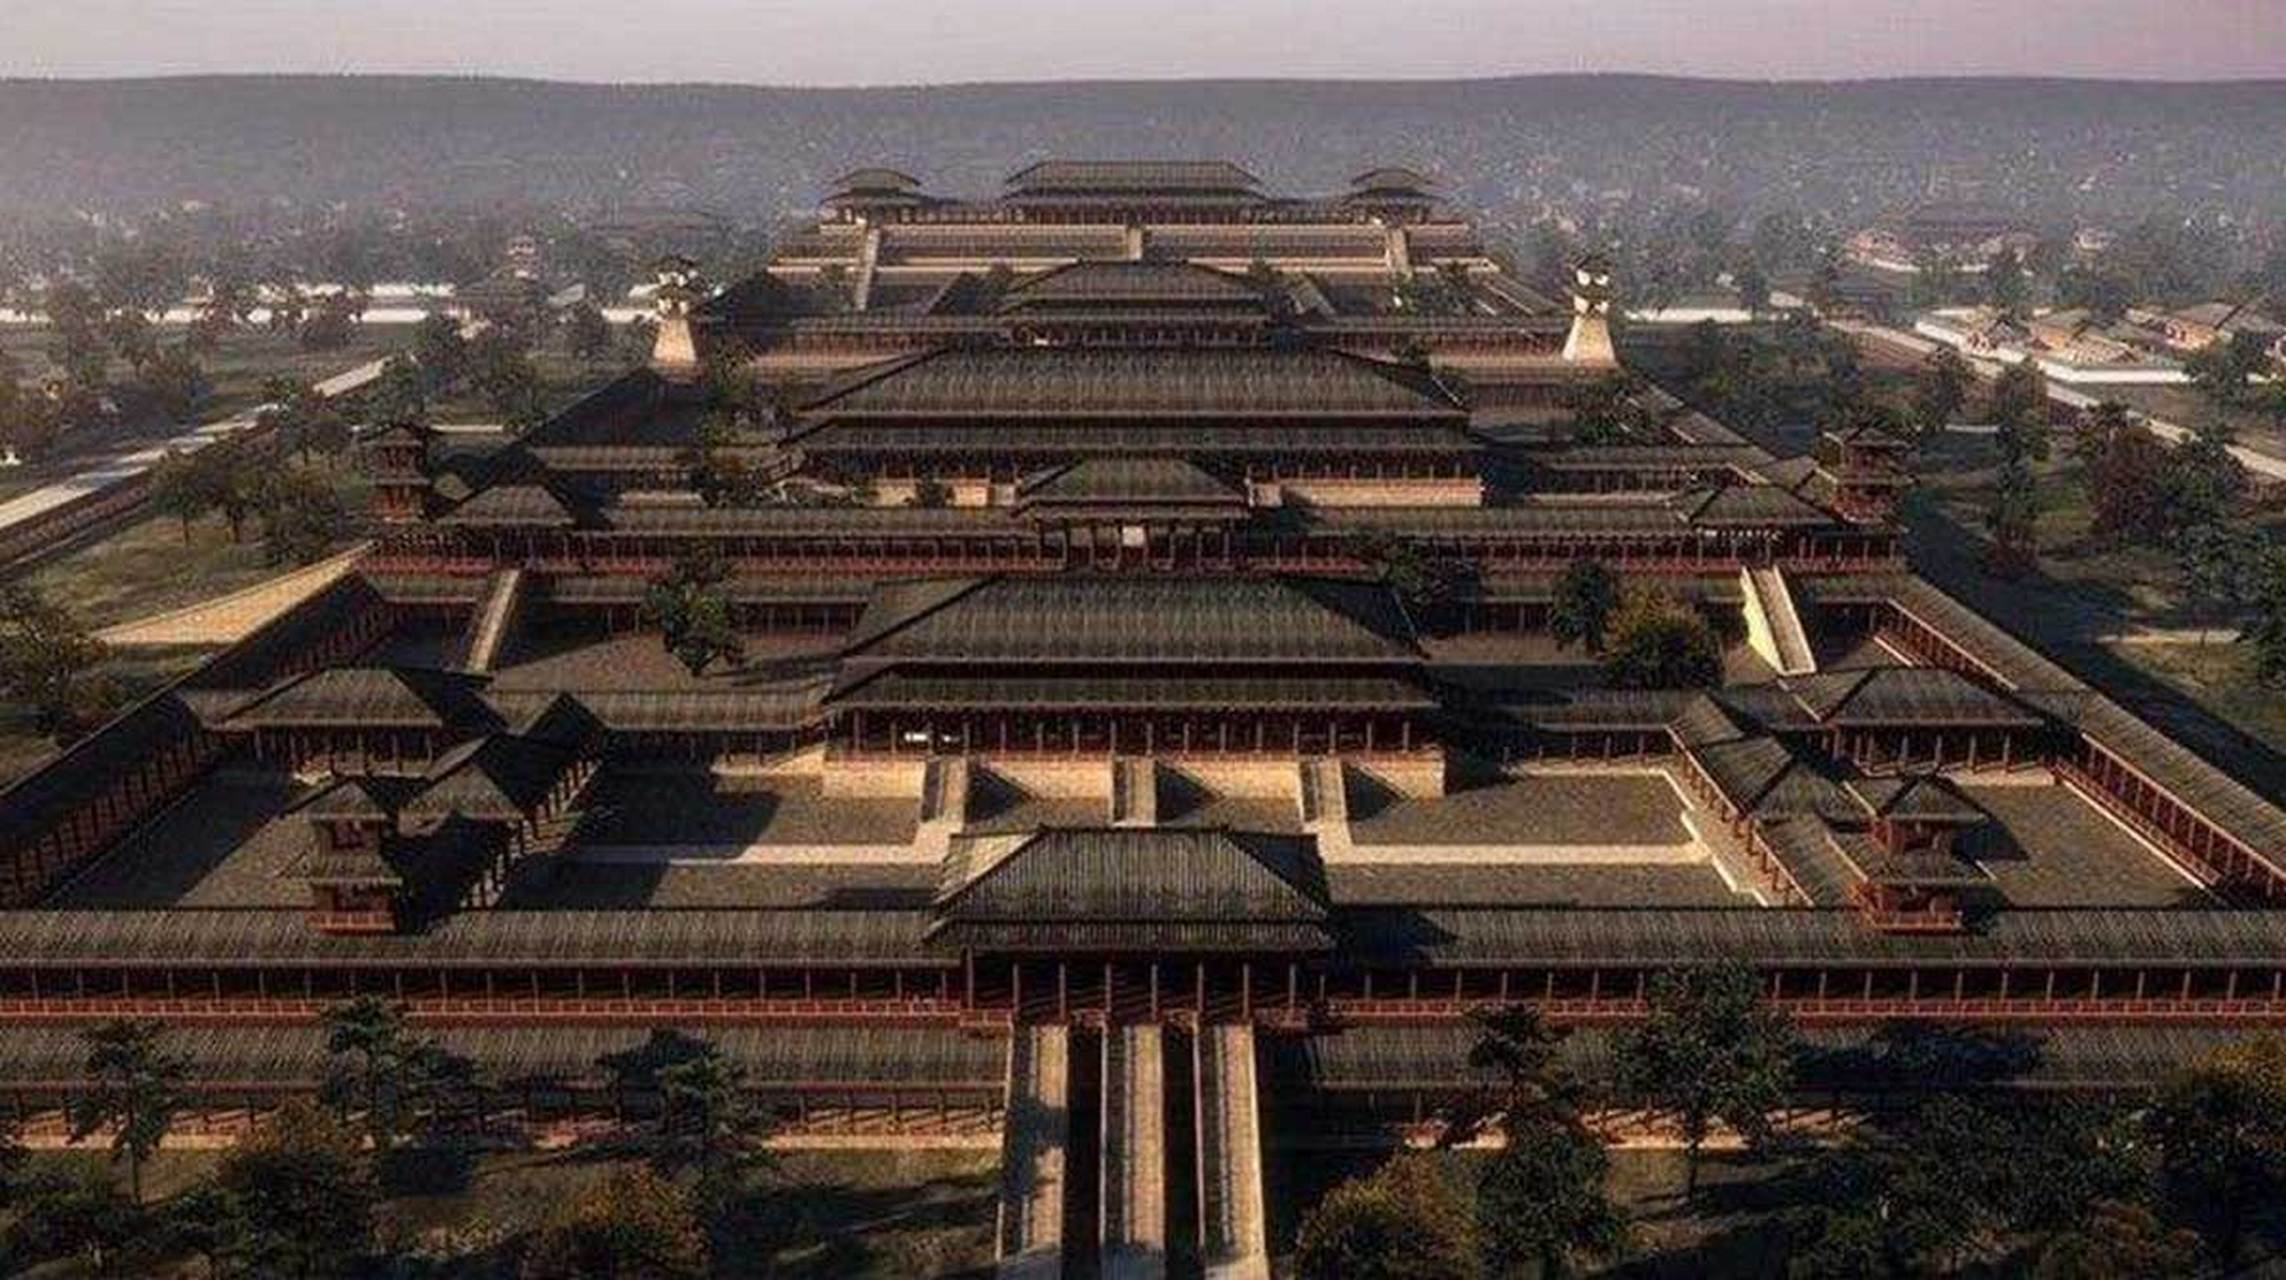 长安宫殿群是道家俗世建筑规划的代表,汉代的主要宫殿都是以道家名词